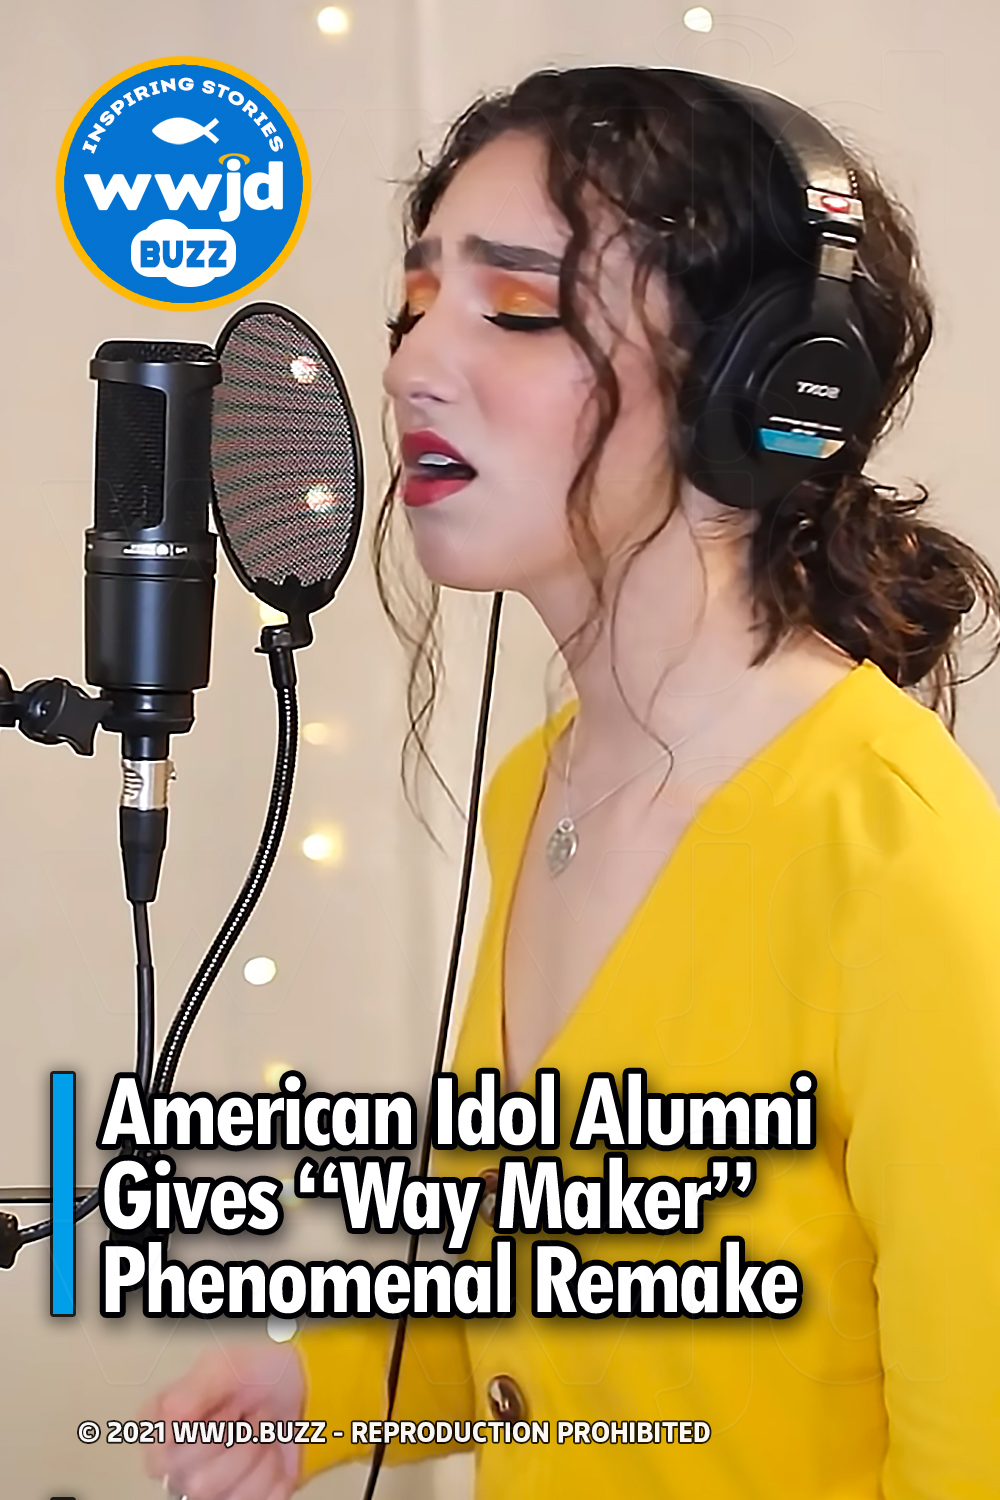 American Idol Alumni Gives “Way Maker” Phenomenal Remake